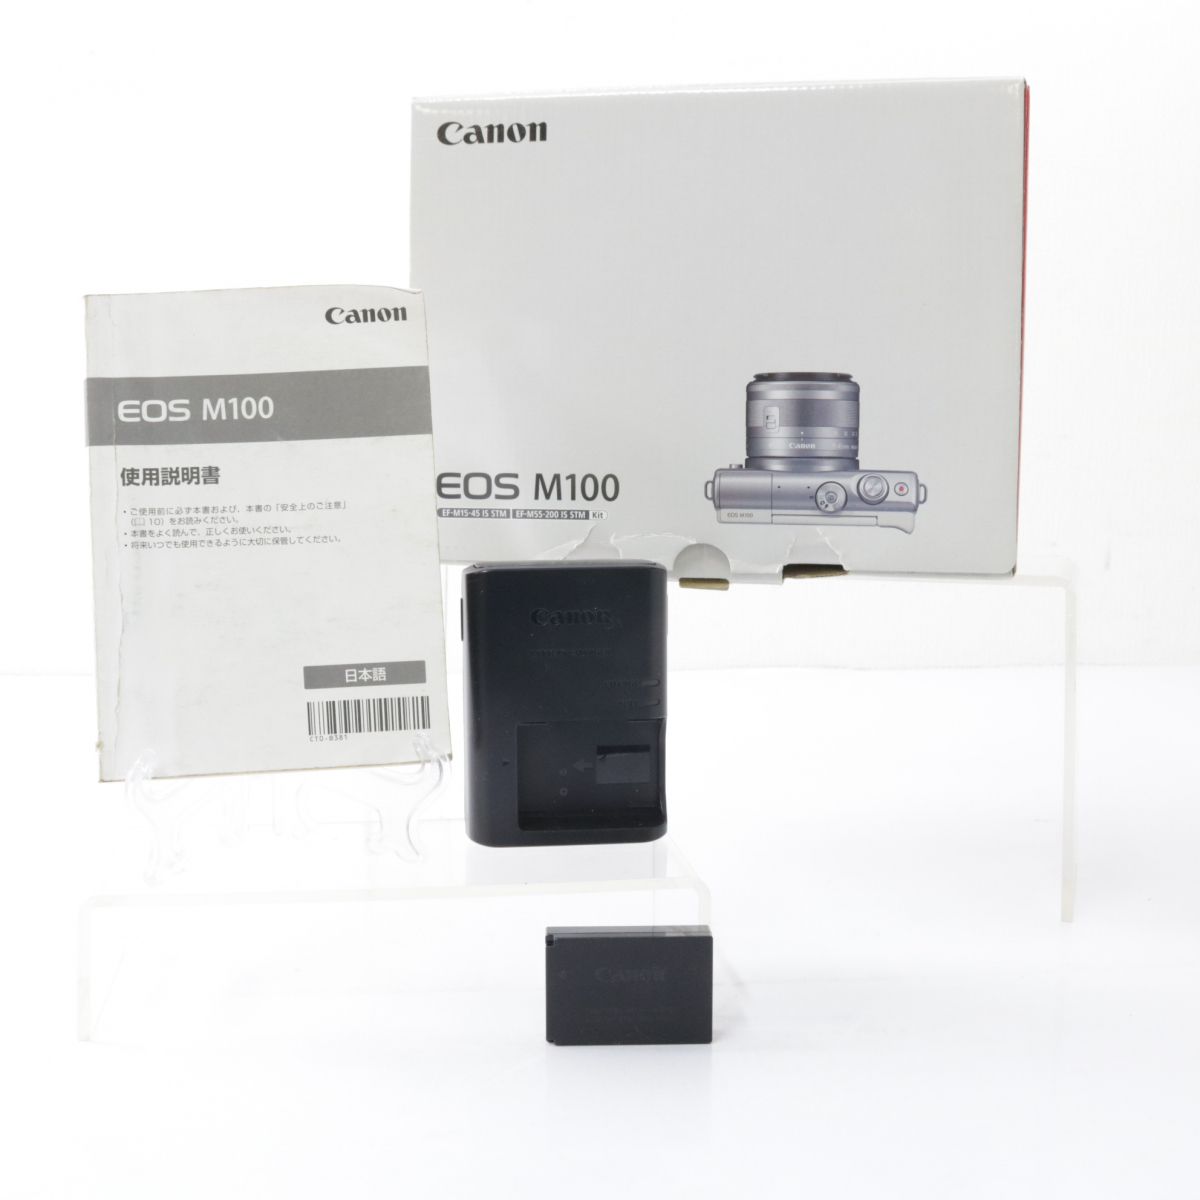 【美品/ 箱 /付属品含む】Cannon EOS M100 ミラーレス一眼カメラ キャノン ホワイトカラー 撮影 思い出 コレクション コレクター 030FUDR63_画像9